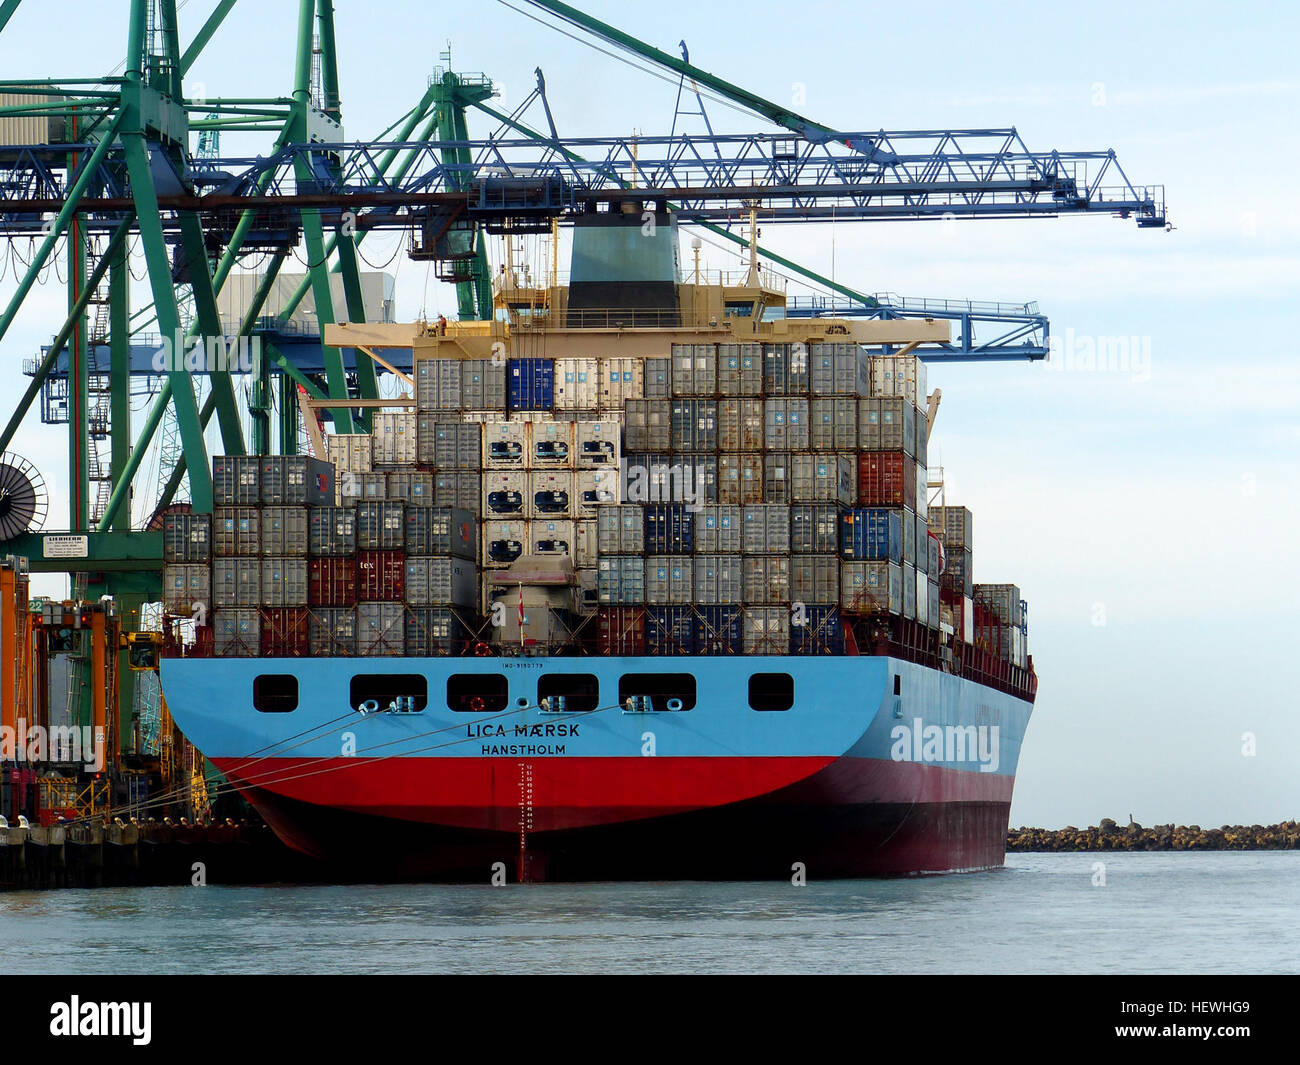 Pensieri colorati attimi dedicati... Le-navi-portacontainer-sono-navi-cargo-che-trasportano-tutti-del-loro-carico-nel-carrello-size-containers-in-una-tecnica-denominata-containerizzazione-essi-sono-un-mezzo-comune-di-commerciale-del-trasporto-merci-intermodale-e-portano-ora-la-maggior-parte-delle-navi-marittime-non-rinfusa-nave-container-la-capacita-e-misurata-in-twenty-foot-equivalent-unit-tue-i-carichi-tipici-sono-un-mix-di-20-piedi-e-40-piedi-2-tue-iso-contenitori-standard-con-quest-ultimo-predominante-hewhg9